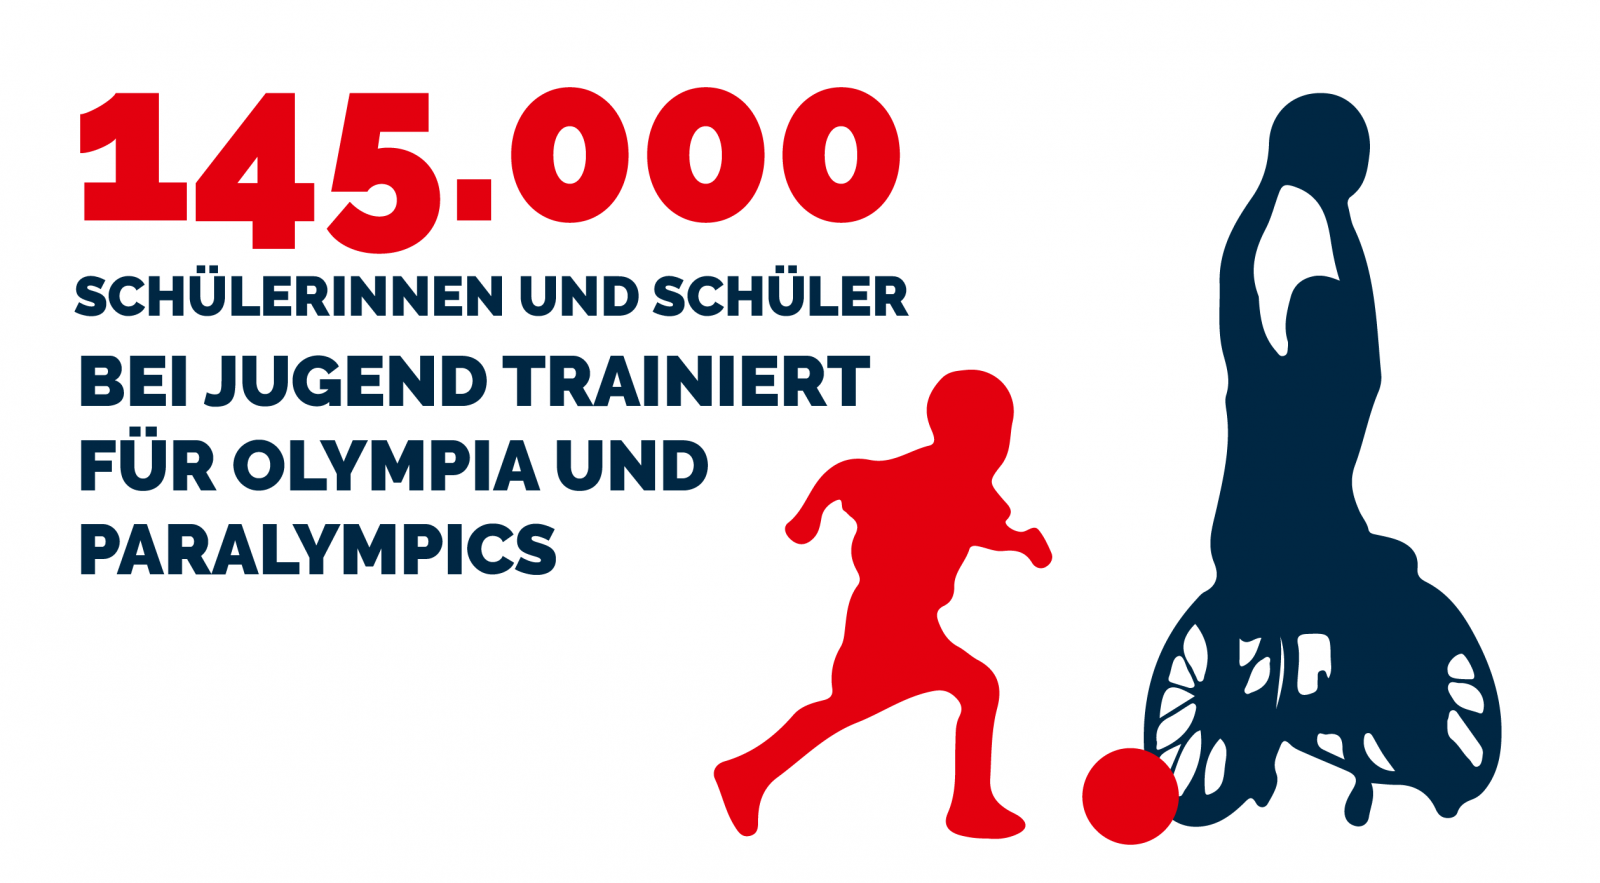  145.000 Schülerinnen und Schüler bei Jugend trainiert für Olympia und Paralympics